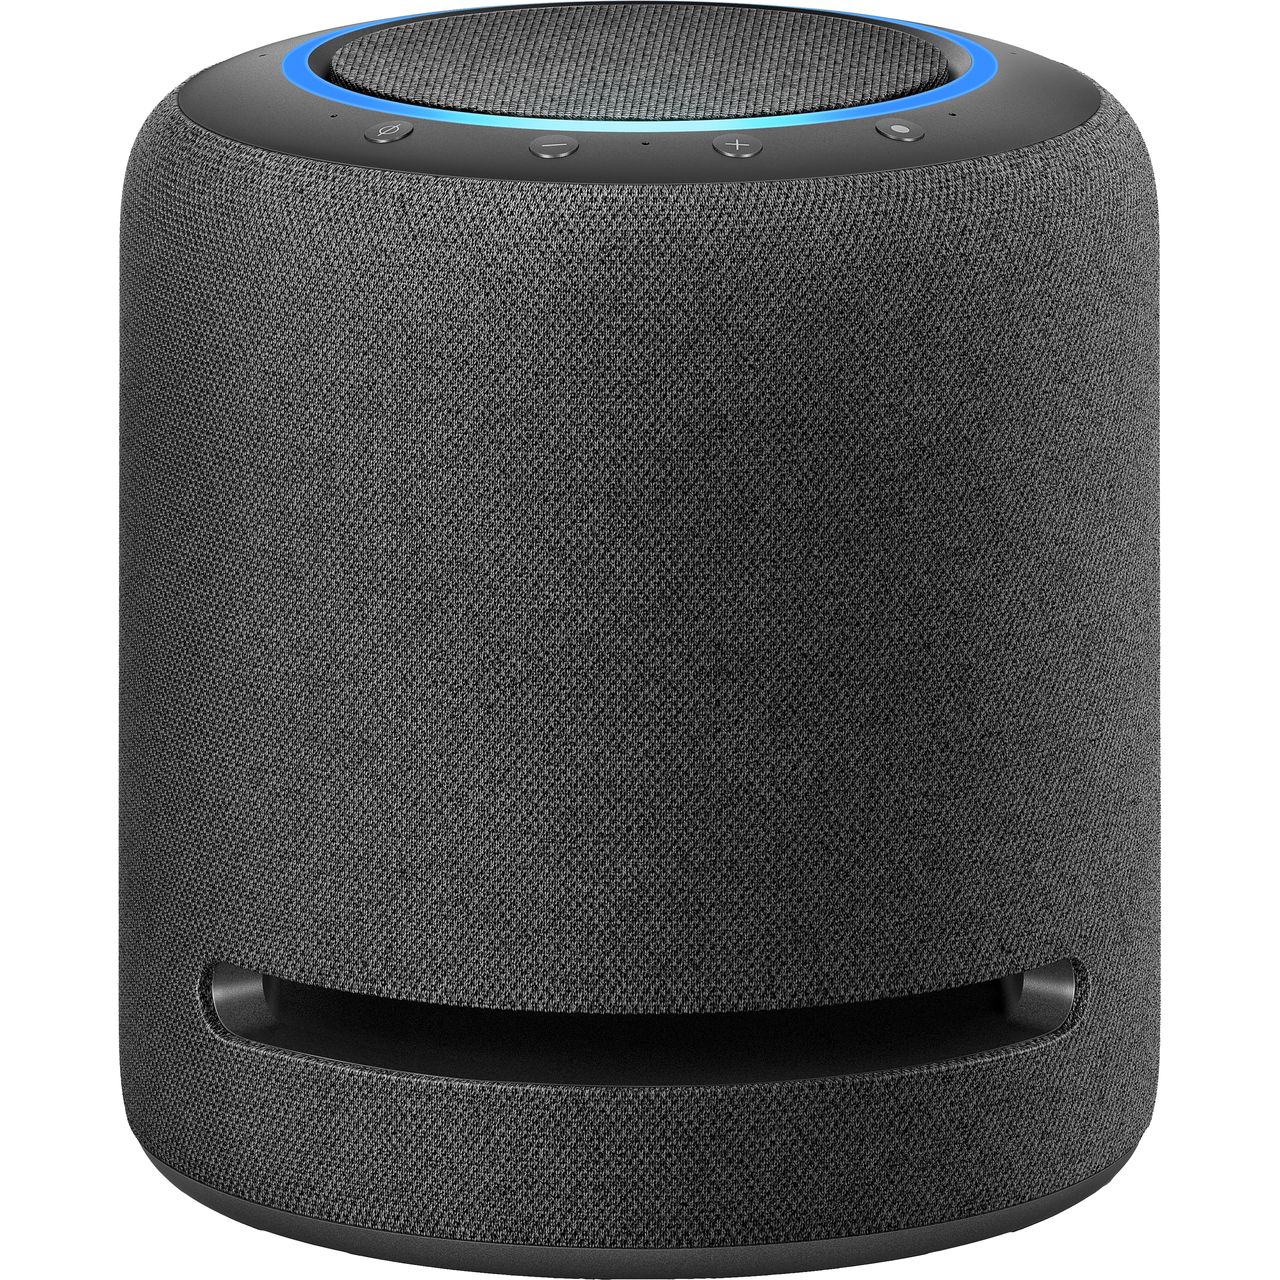 Amazon Echo Studio with Alexa Review